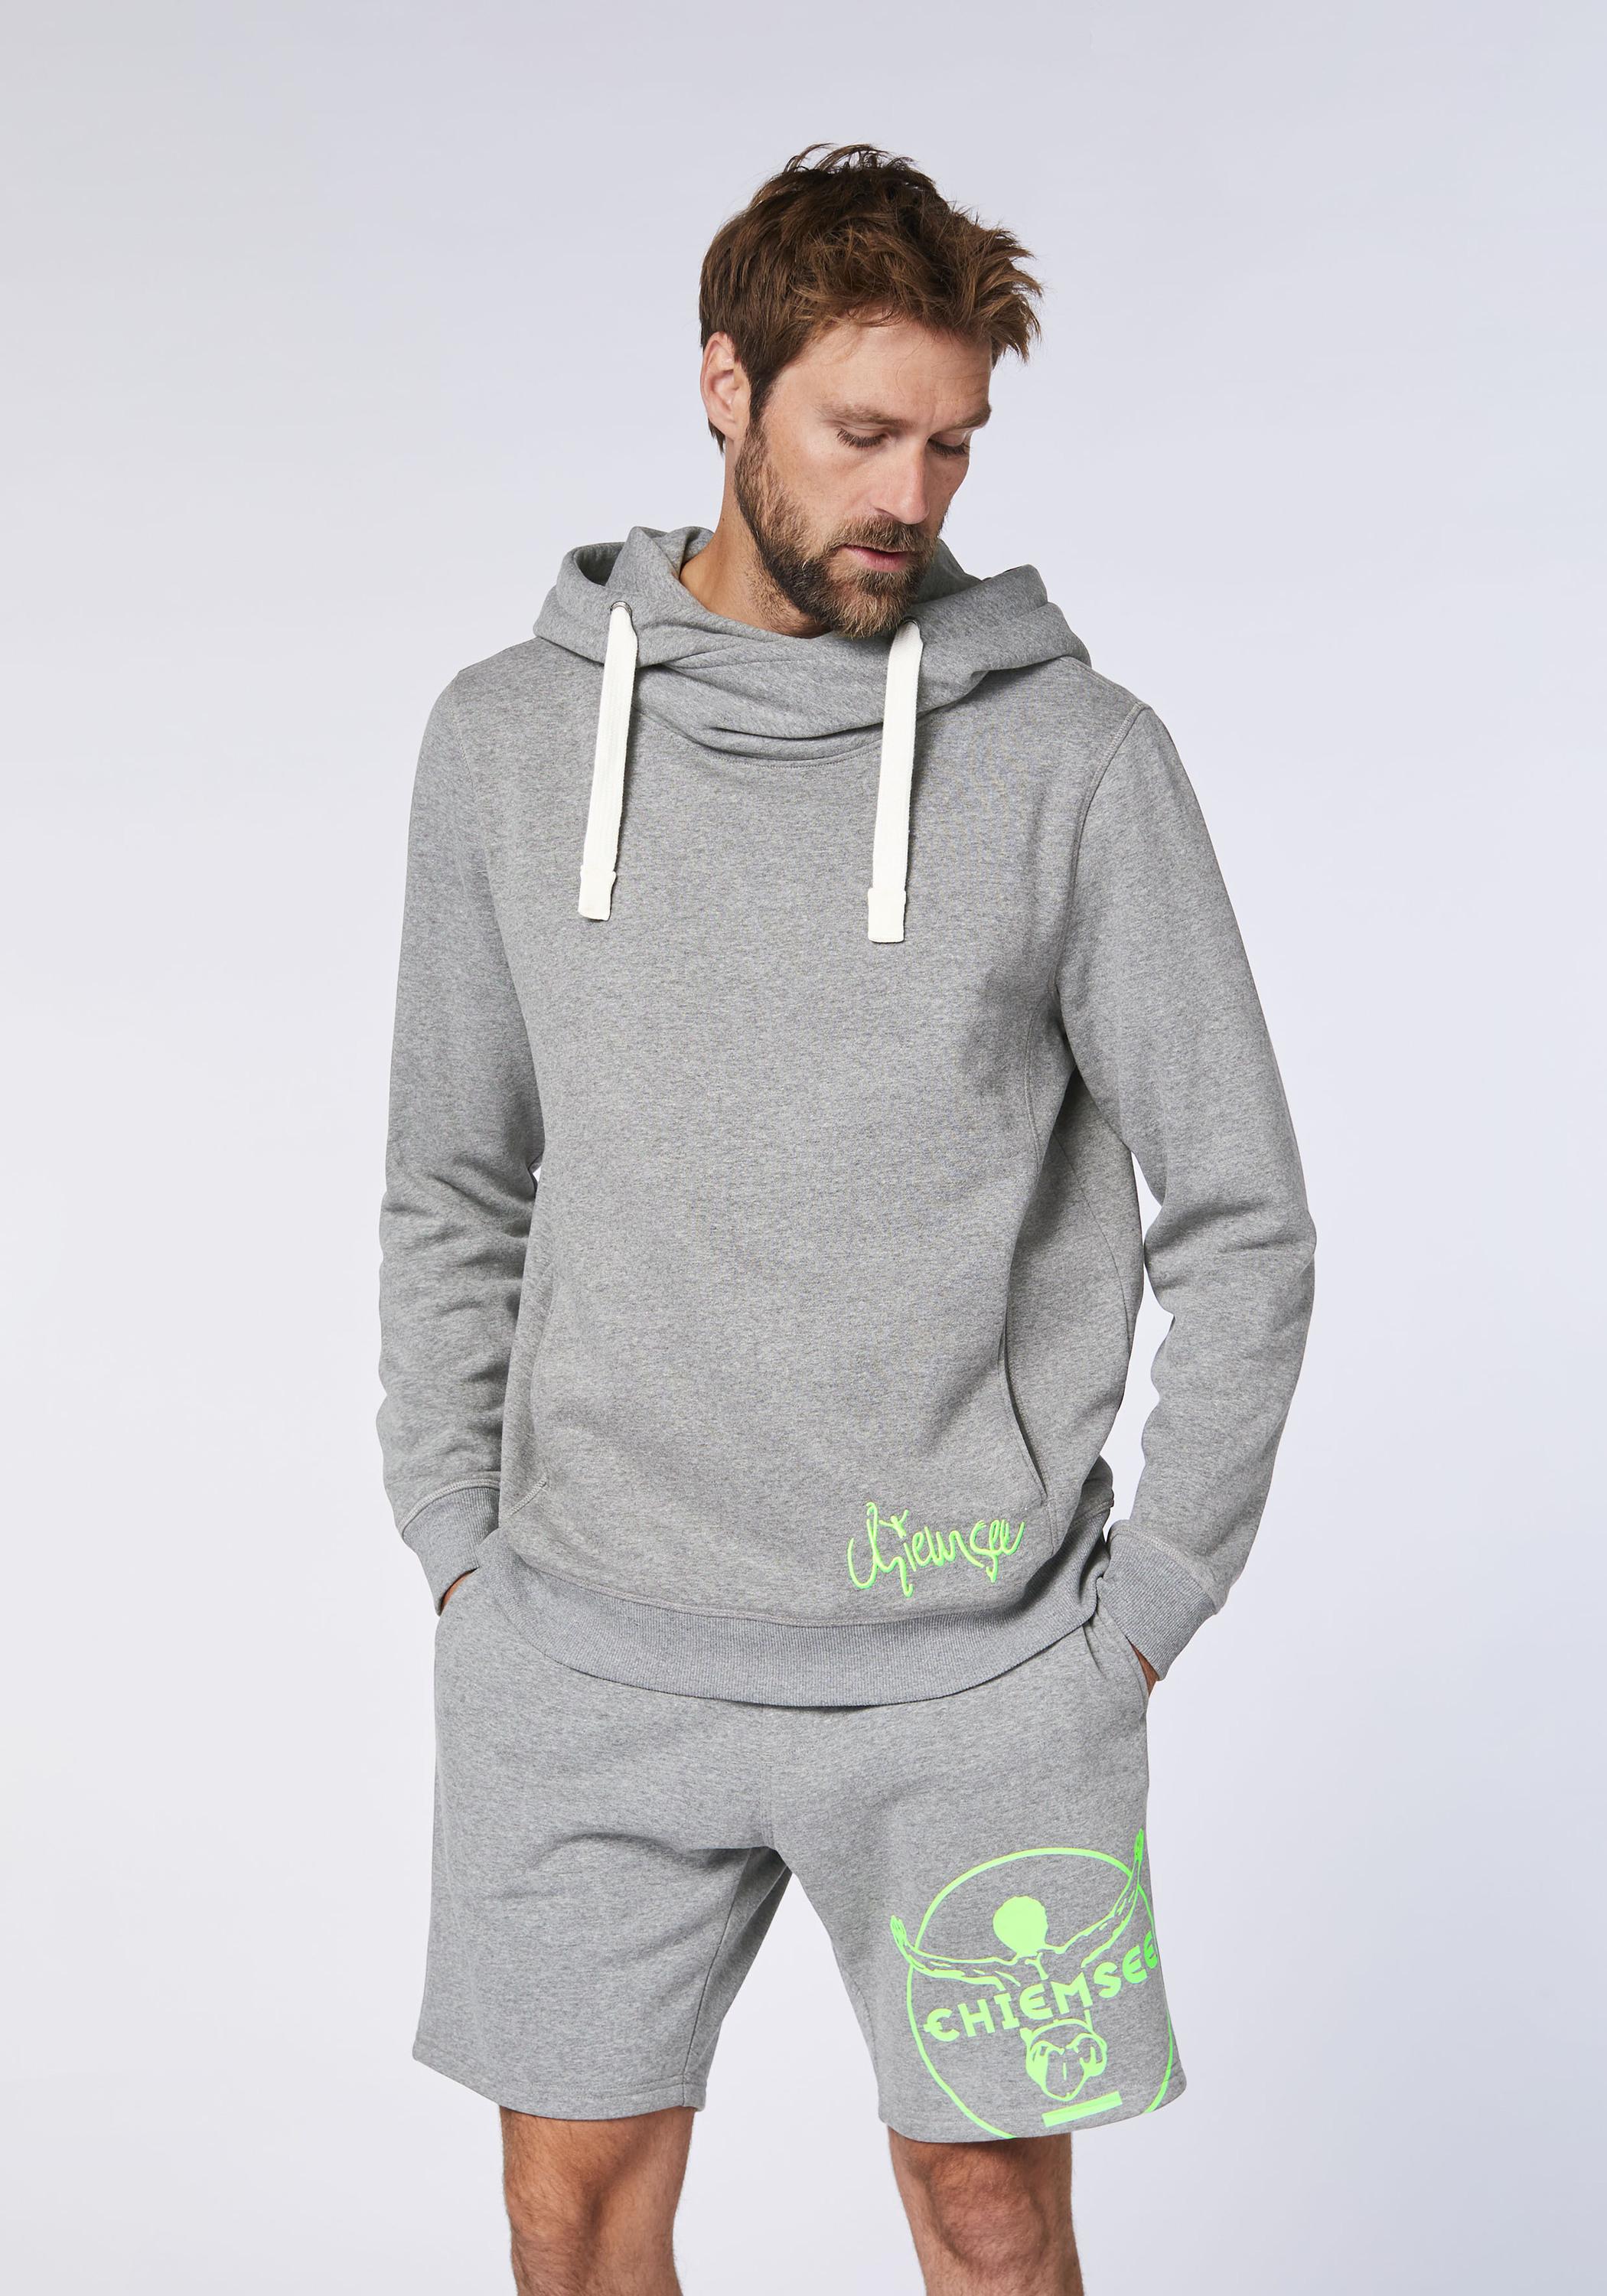 Chiemsee Hoodie Sweatshirt Herren Medium Online im Shop kaufen von SportScheck Melange